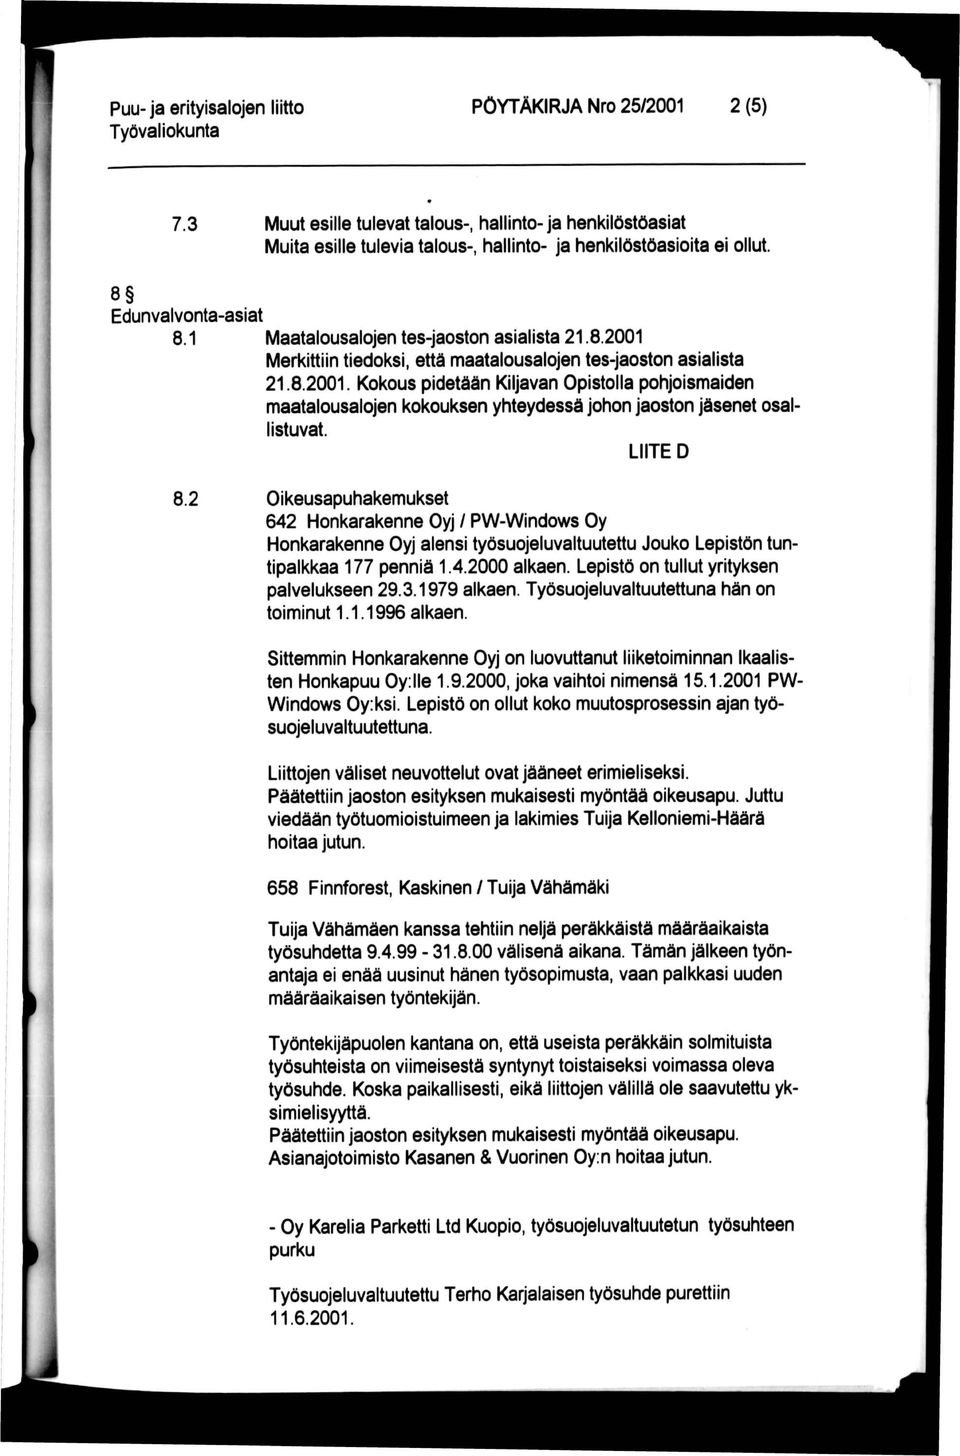 LIITE D 8.2 Oikeusapuhakemukset 642 Honkarakenne Oyj / PW-Windov/s Oy Honkarakenne Oyj alensi työsuojeluvaltuutettu Jouko Lepistön tuntipalkkaa 177 penniä 1.4.2000 alkaen.